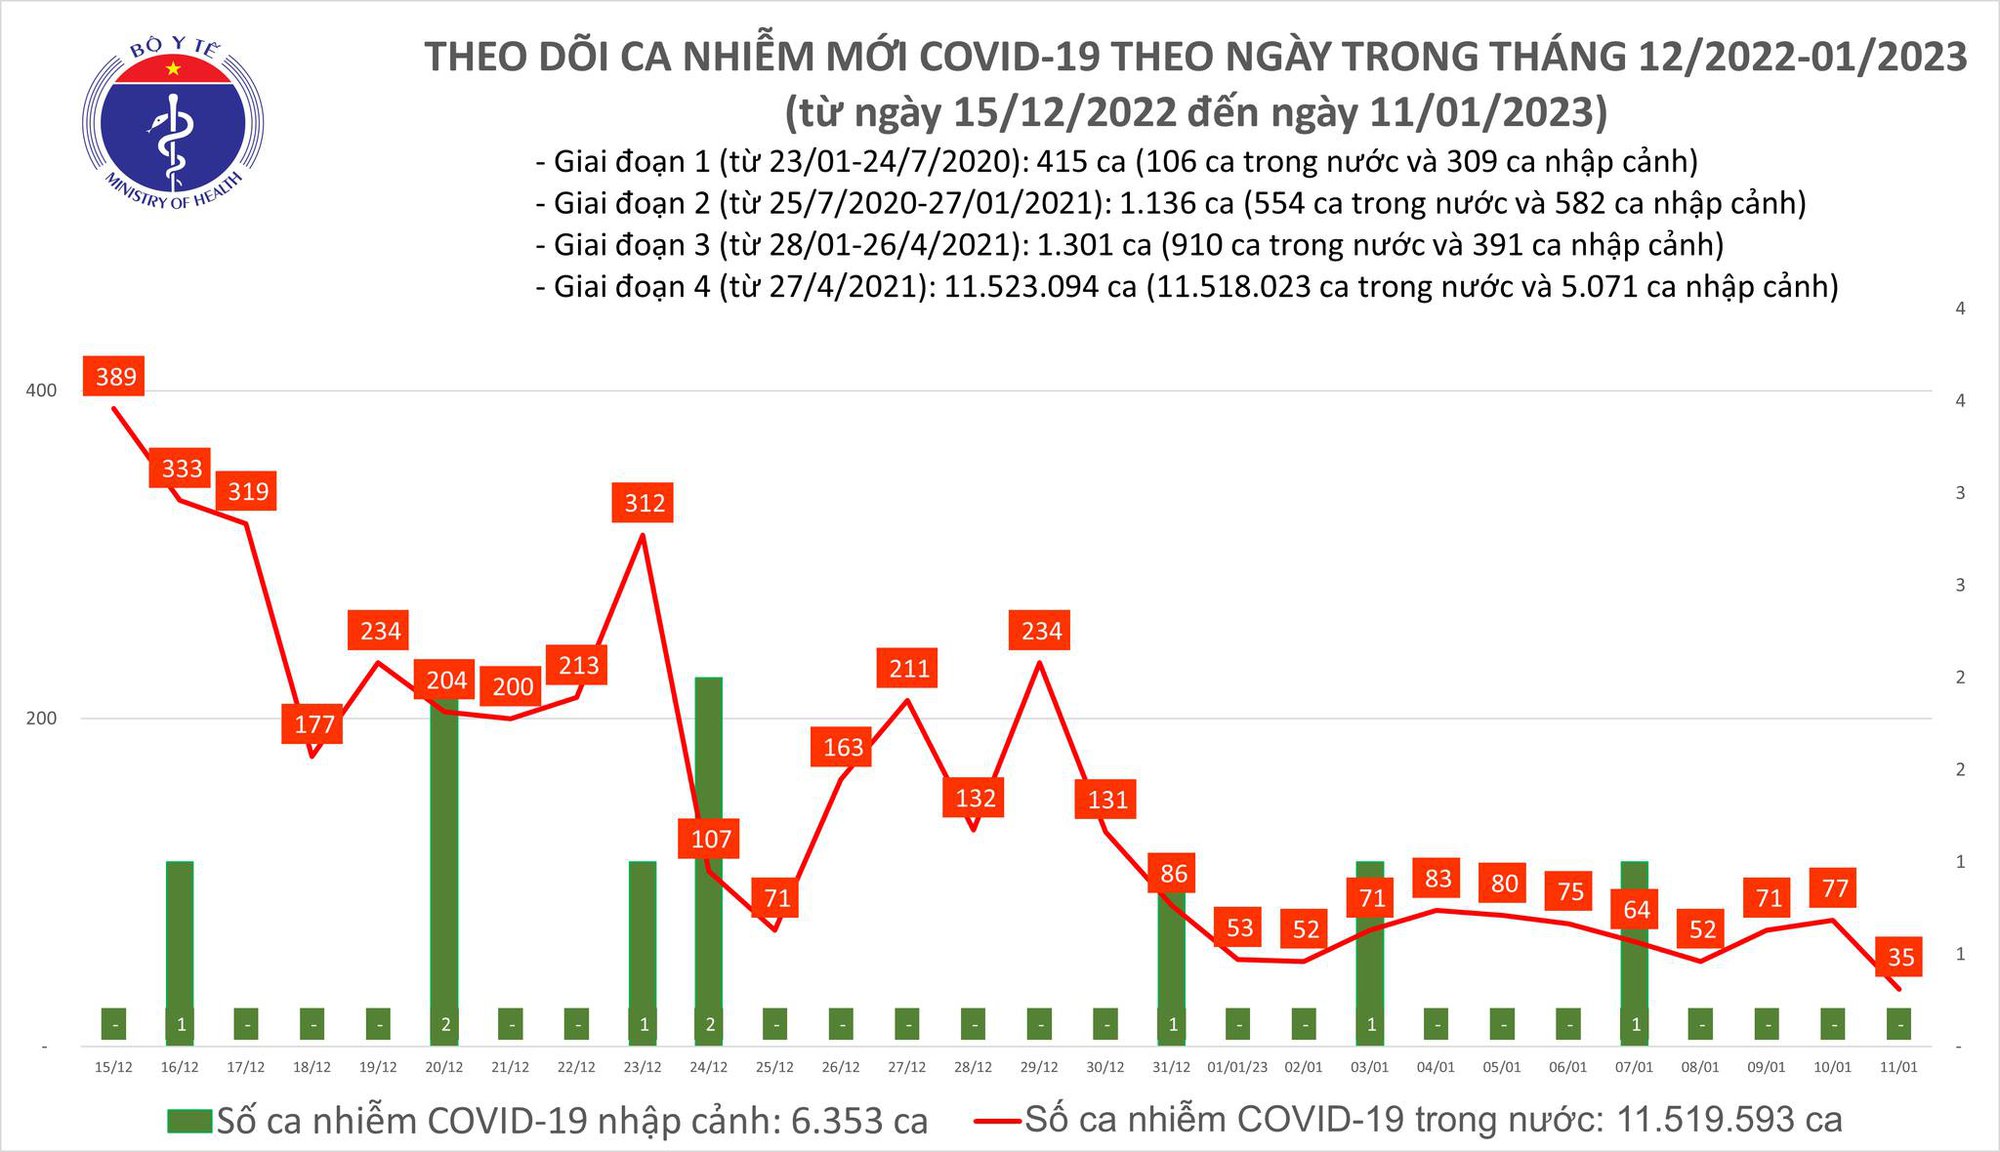 Ngày 11/1: Chỉ còn 35 ca mắc COVID-19, thấp nhất trong gần 2 năm qua - Ảnh 2.